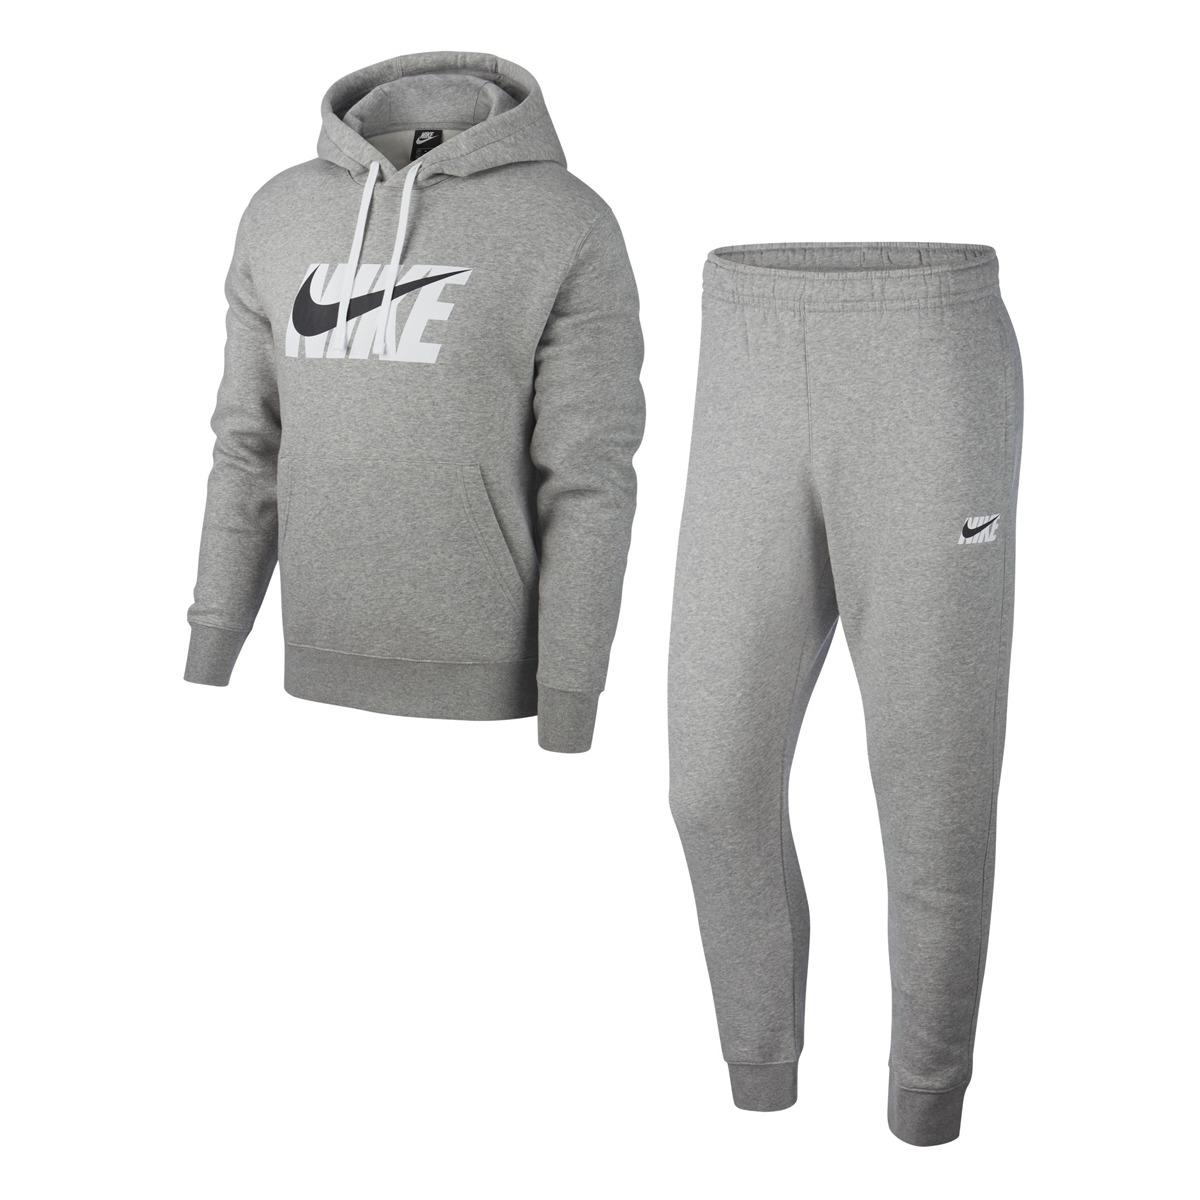 Nike Cotton Sportswear Tracksuit in Gray for Men - Lyst